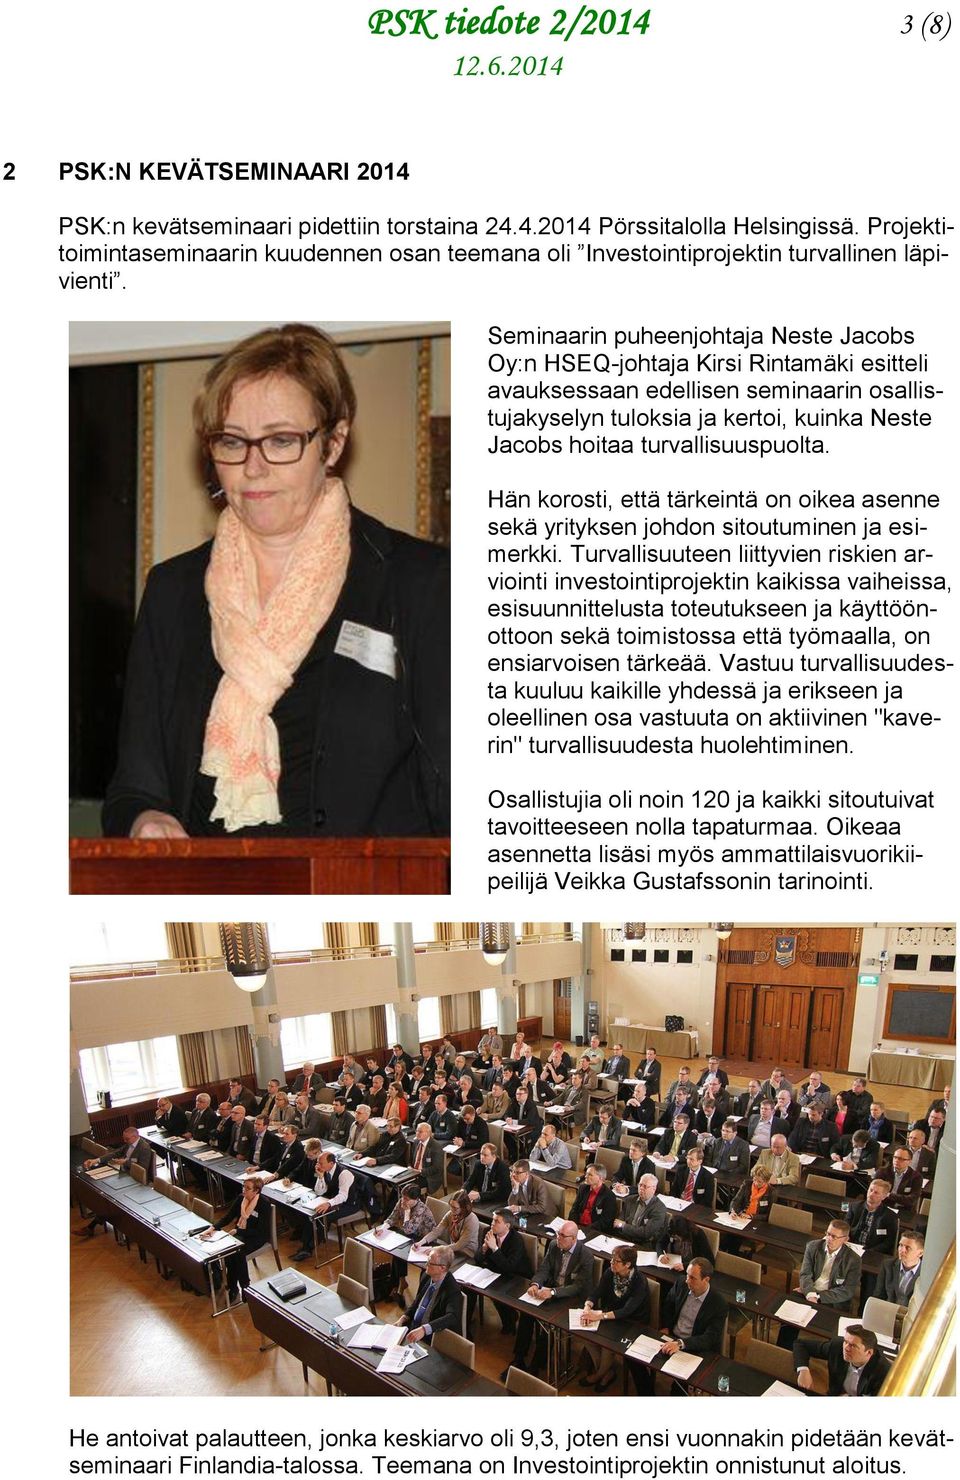 Seminaarin puheenjohtaja Neste Jacobs Oy:n HSEQ-johtaja Kirsi Rintamäki esitteli avauksessaan edellisen seminaarin osallistujakyselyn tuloksia ja kertoi, kuinka Neste Jacobs hoitaa turvallisuuspuolta.